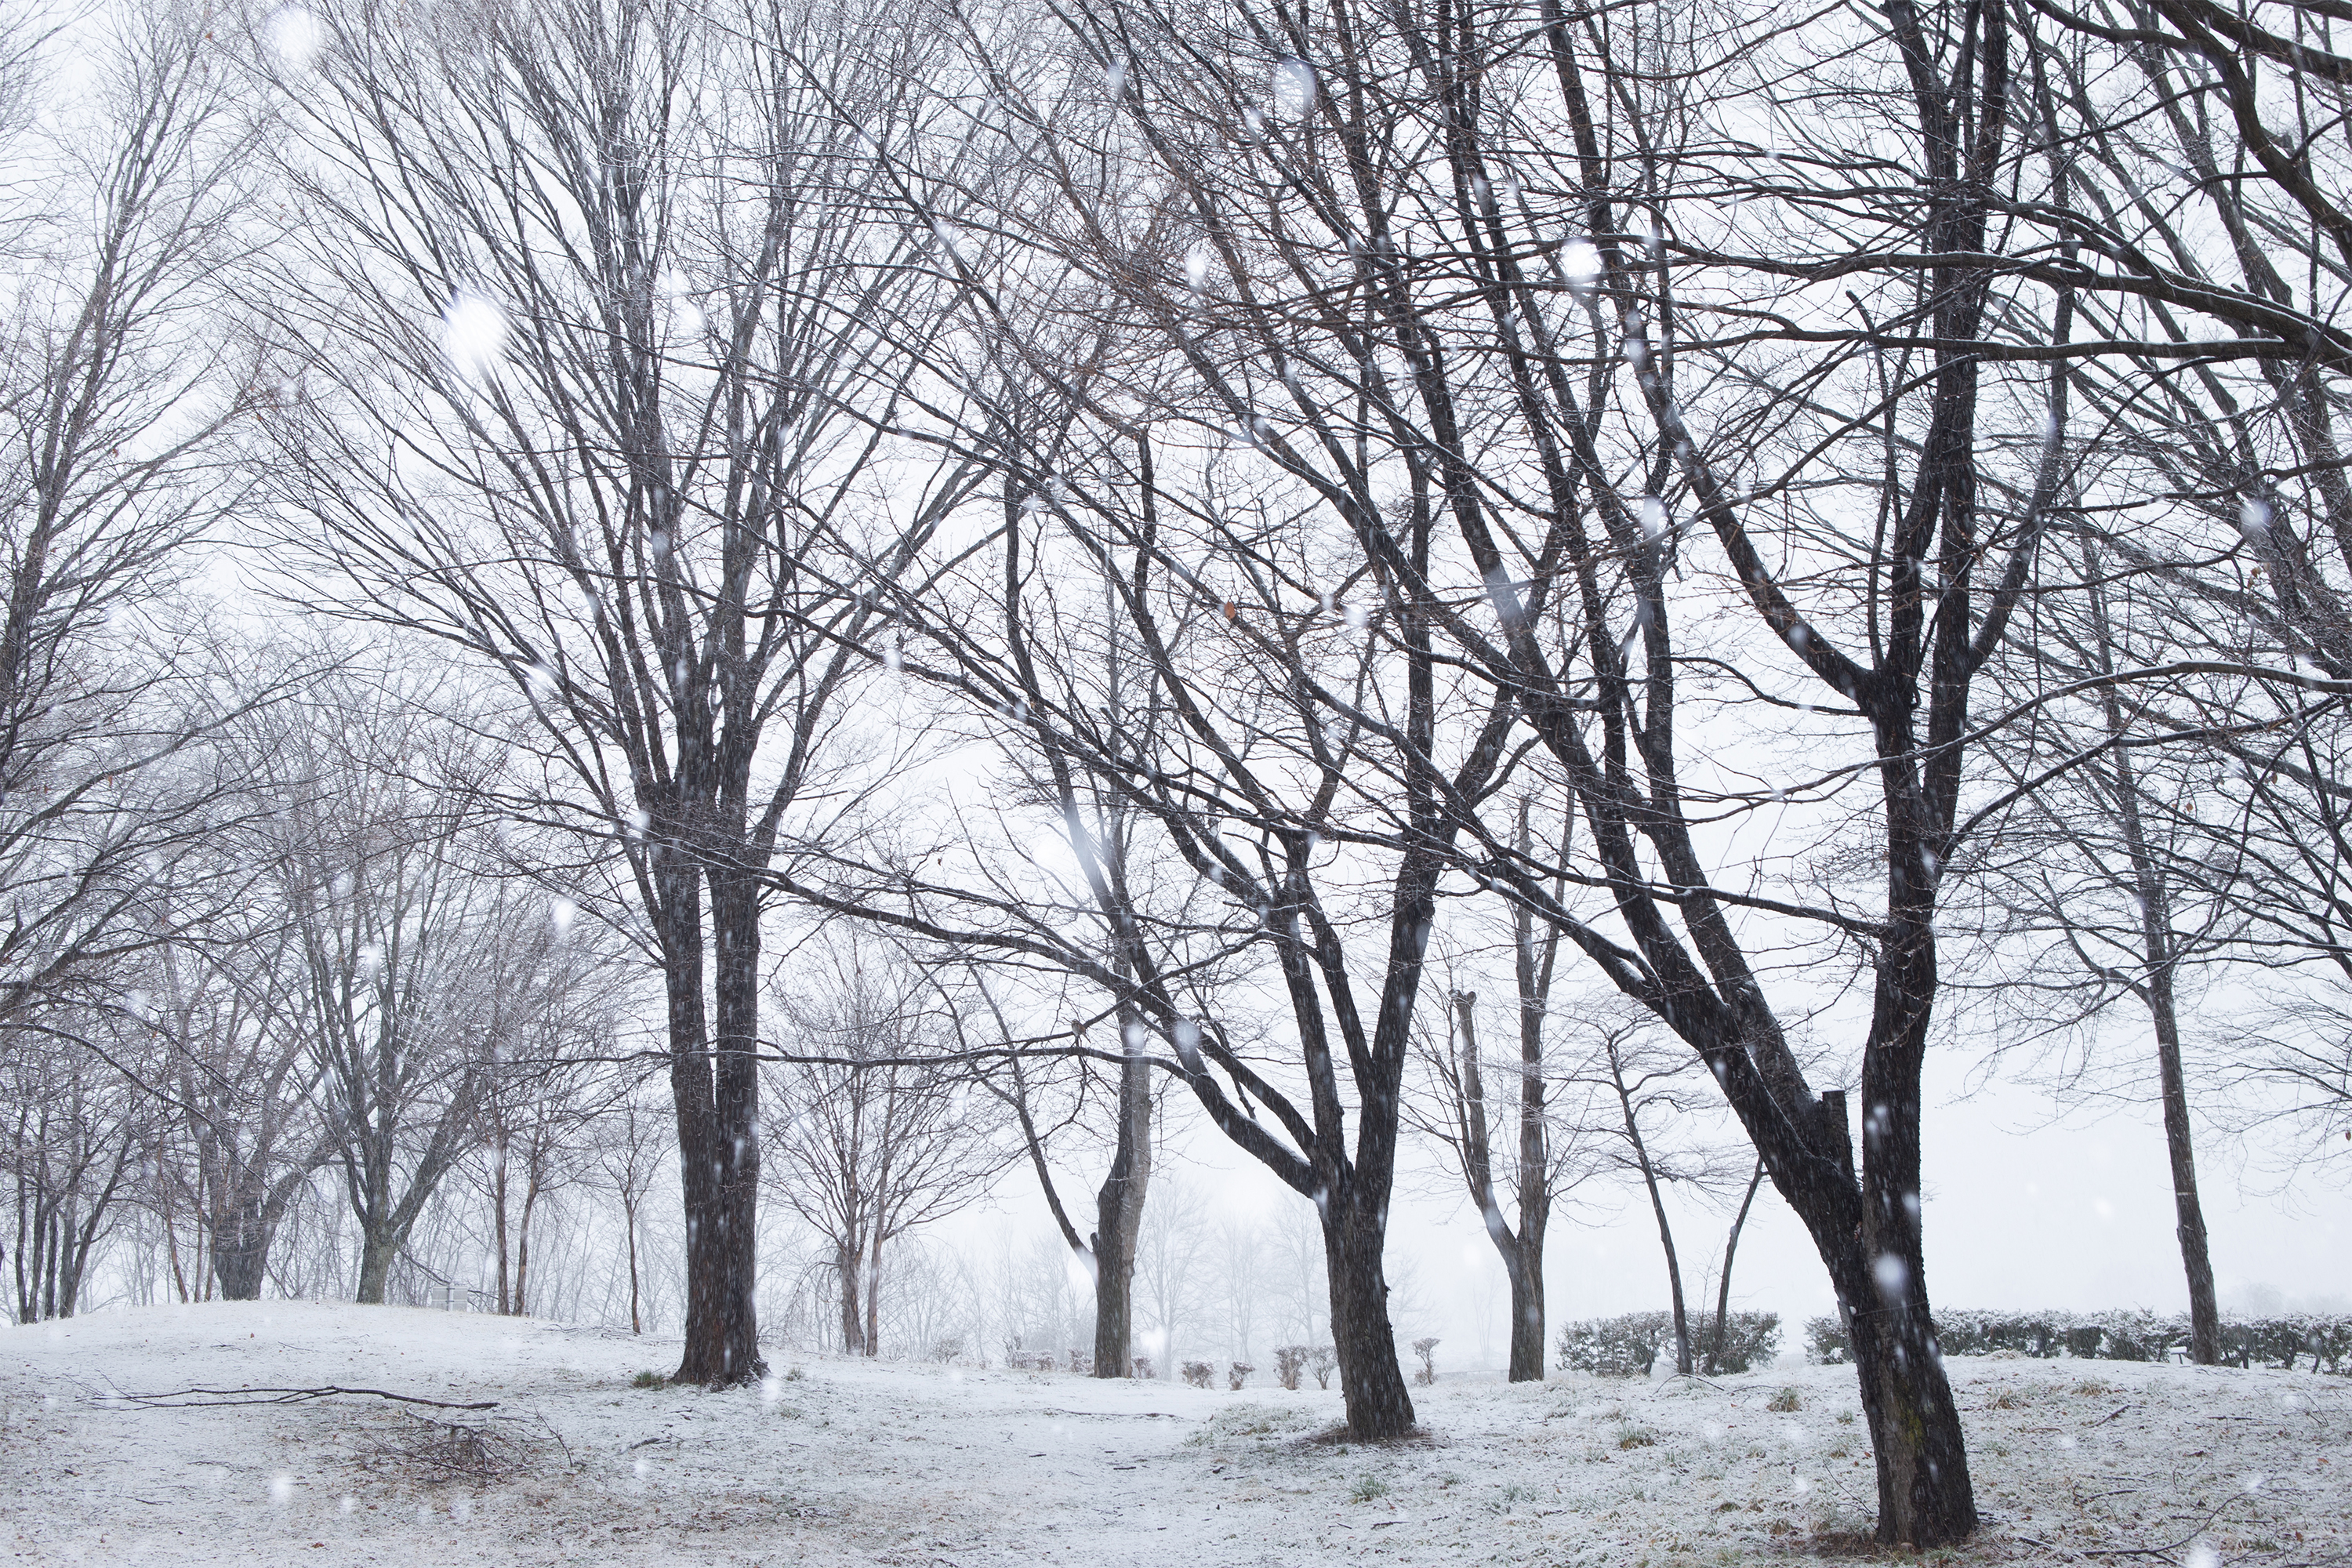 雪が降っている冬の風景 無料の高画質フリー写真素材 イメージズラボ